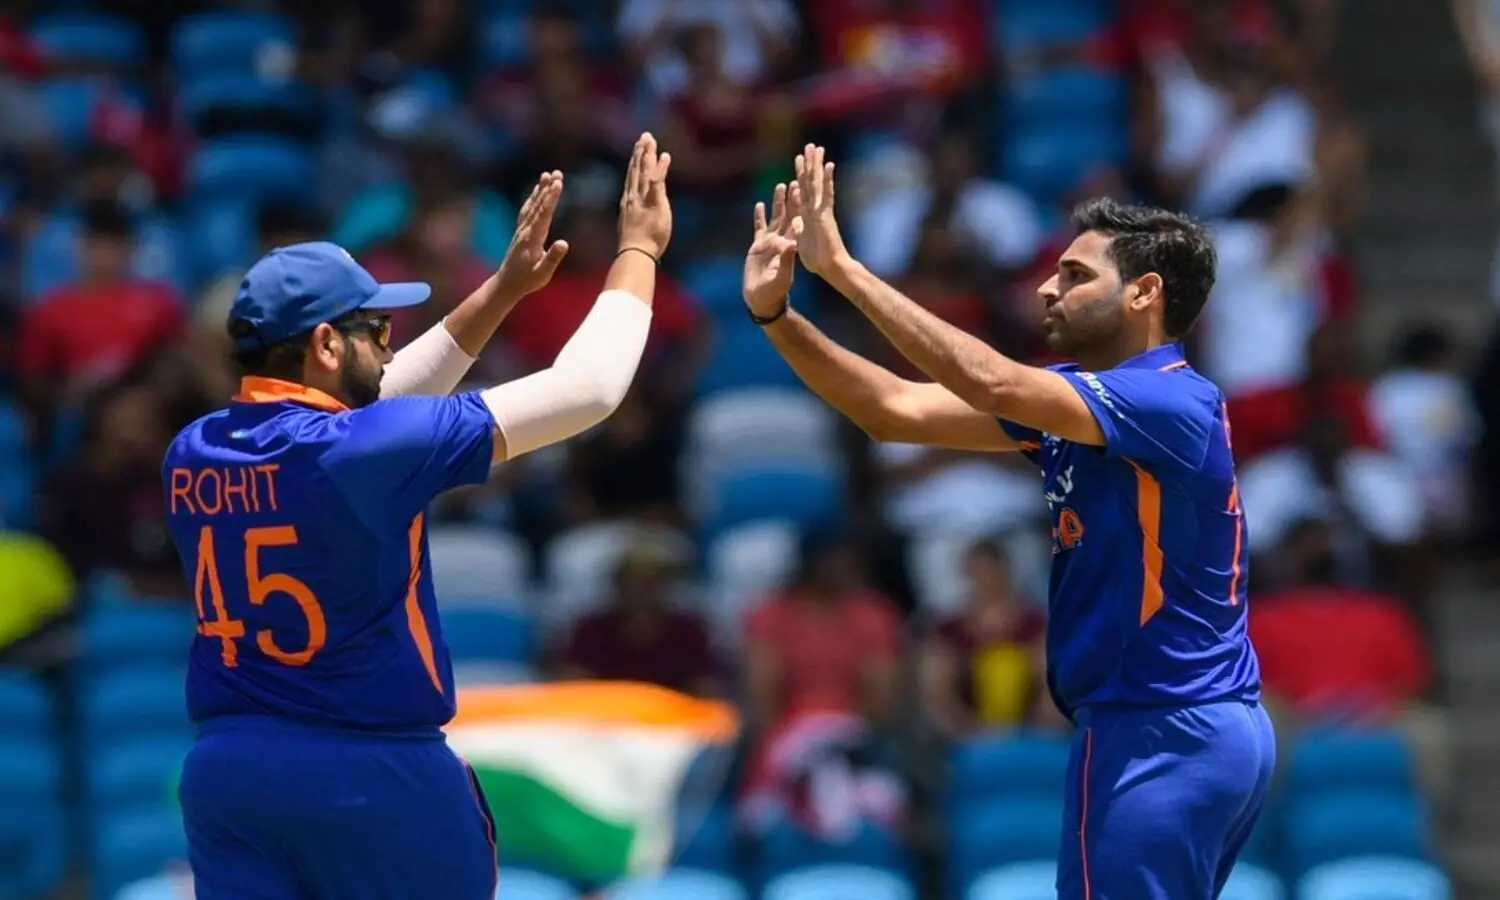 IND vs WI 3rd T20I: भारत के सामने 165 रनों का लक्ष्य, मैच जीते तो सीरीज में मिलेगी बढ़त